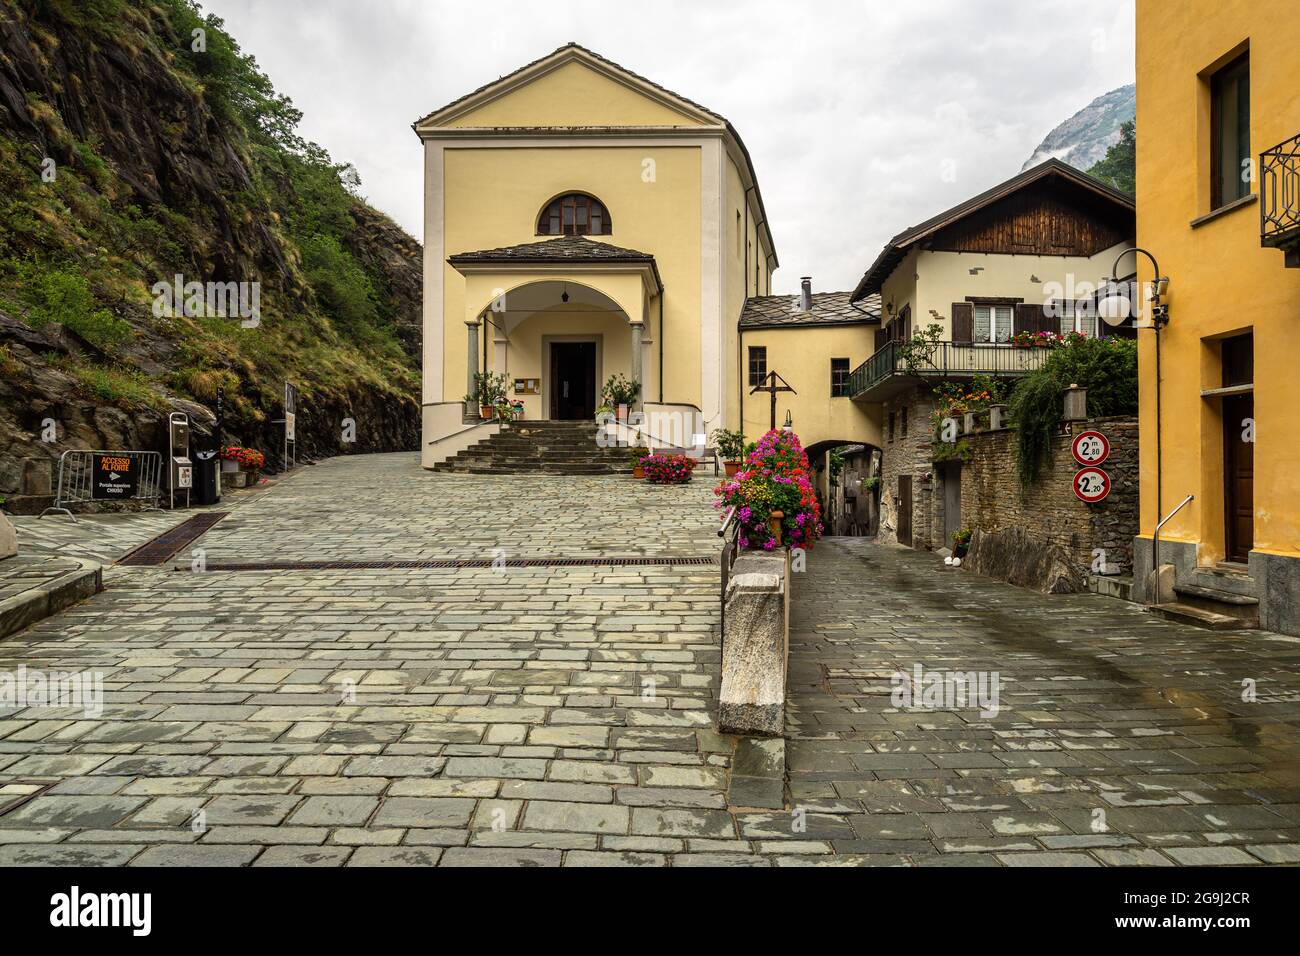 La pittoresca cittadina di Bard in Valle d'Aosta, uno dei più bei villaggi della Valle d'Aosta Foto Stock